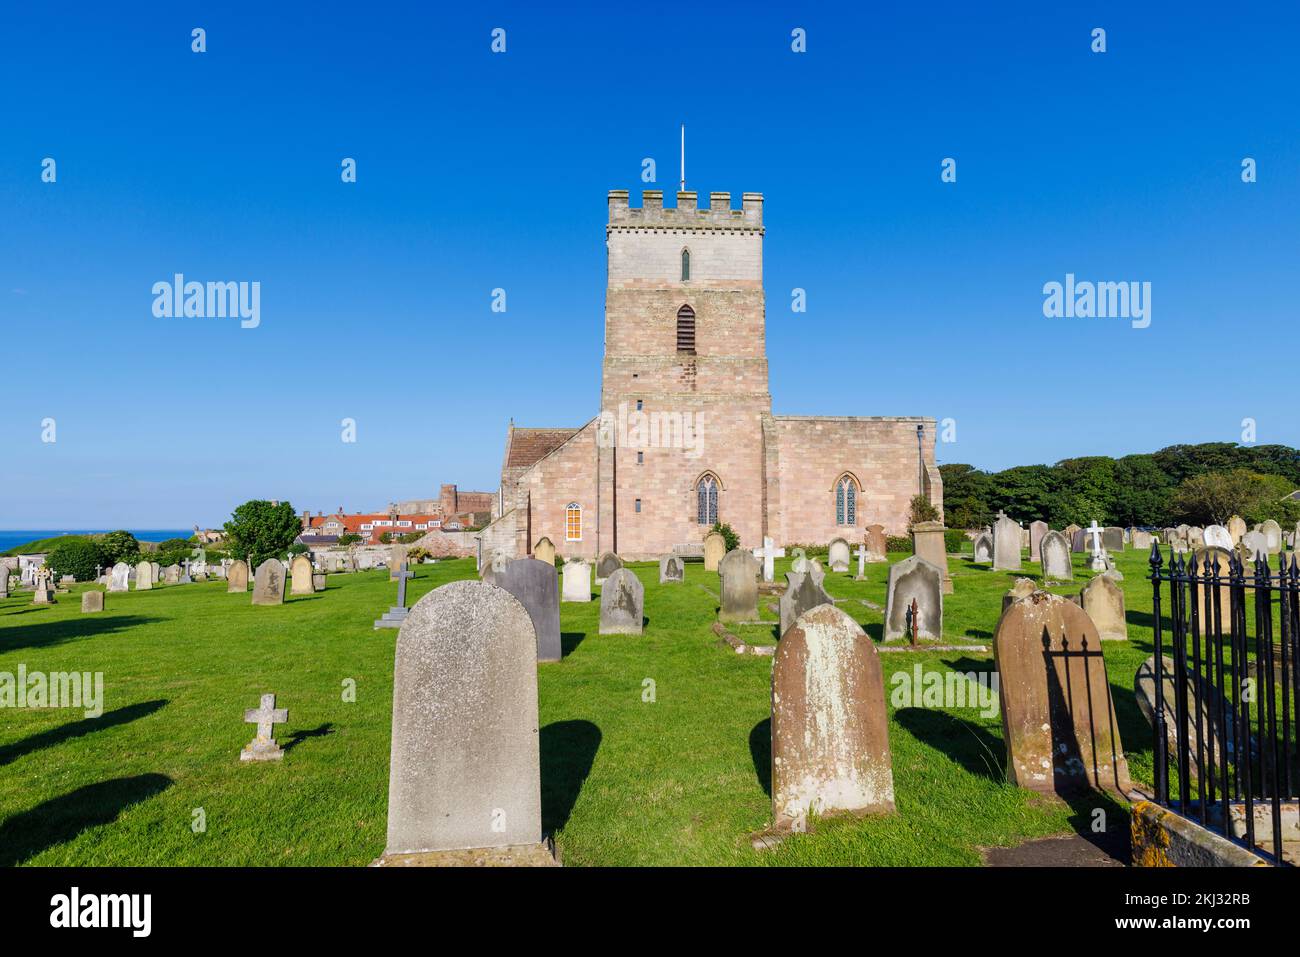 St. Aidan's Church in Bamburgh, ein Dorf in Northumberland an der Nordostküste Englands, das das Denkmal für Grace Darling enthält Stockfoto